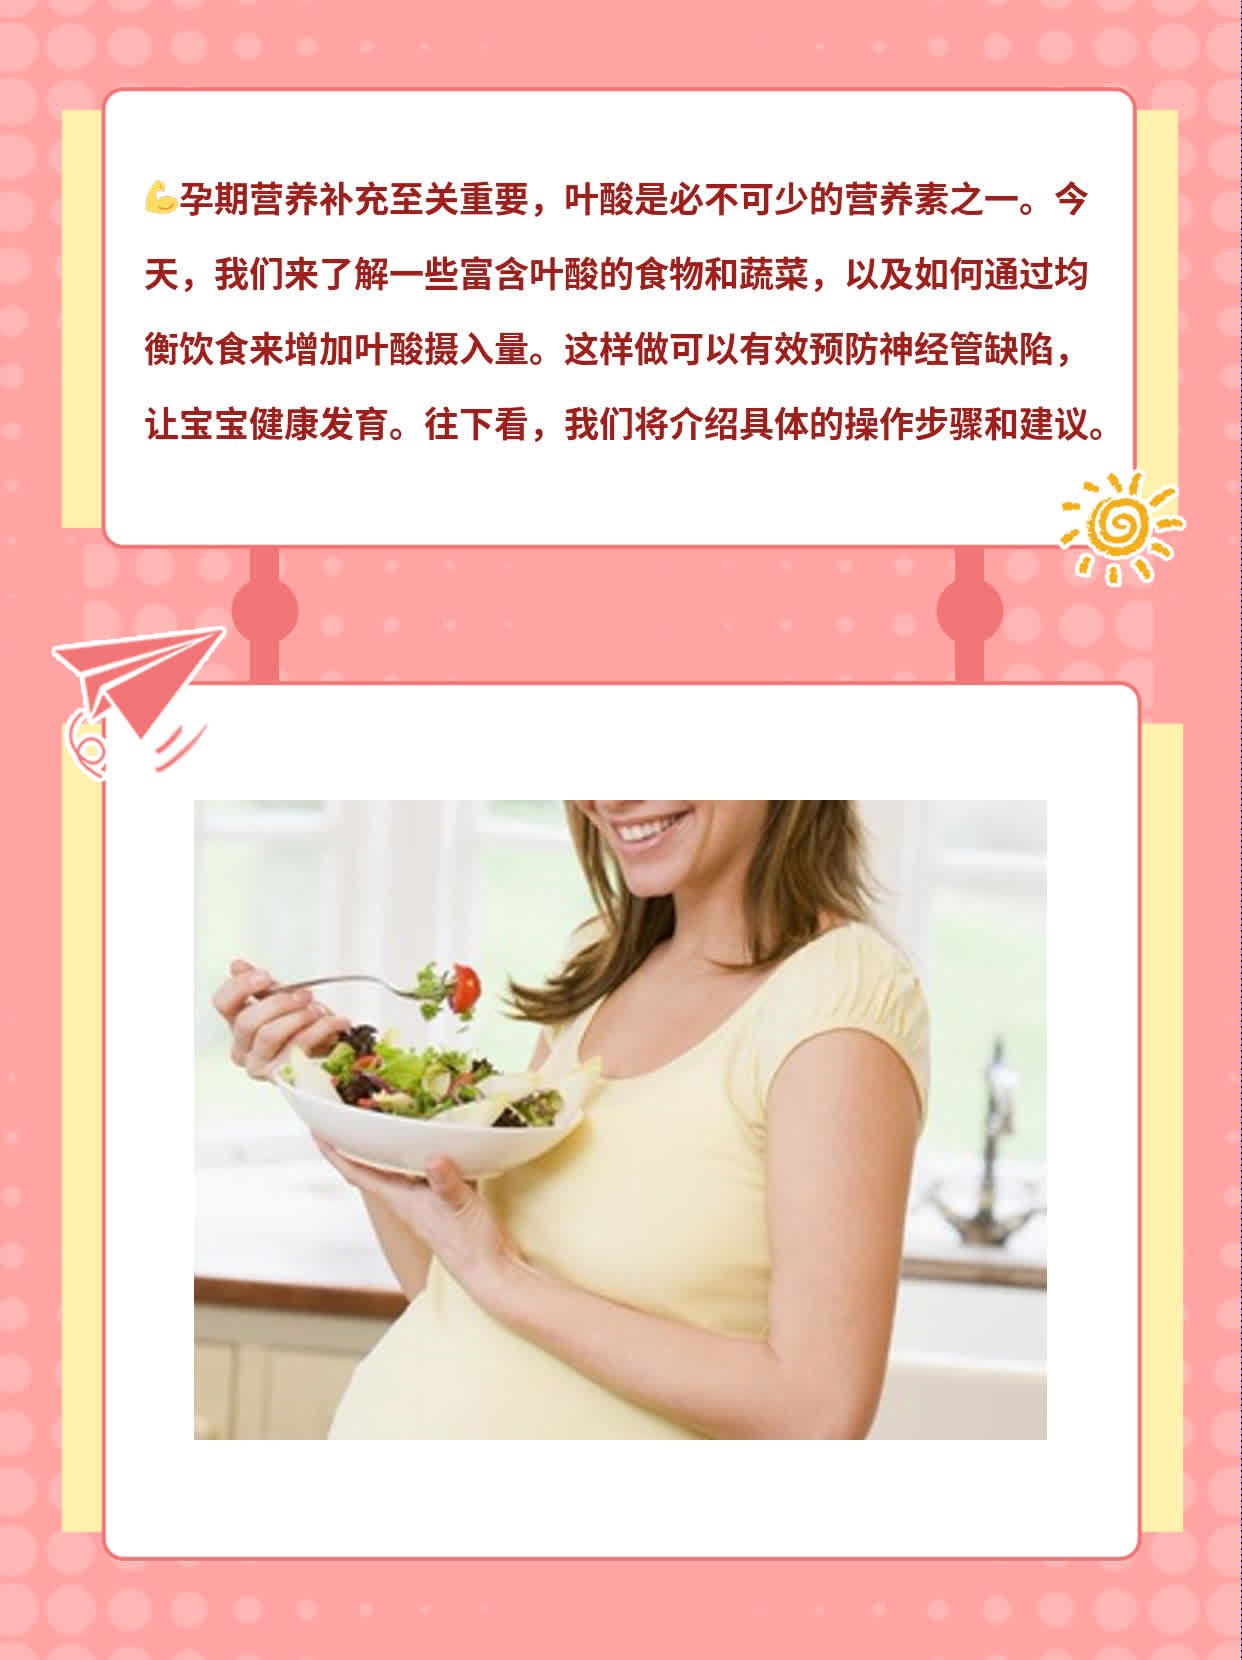 「孕期必备」高叶酸蔬食一览表